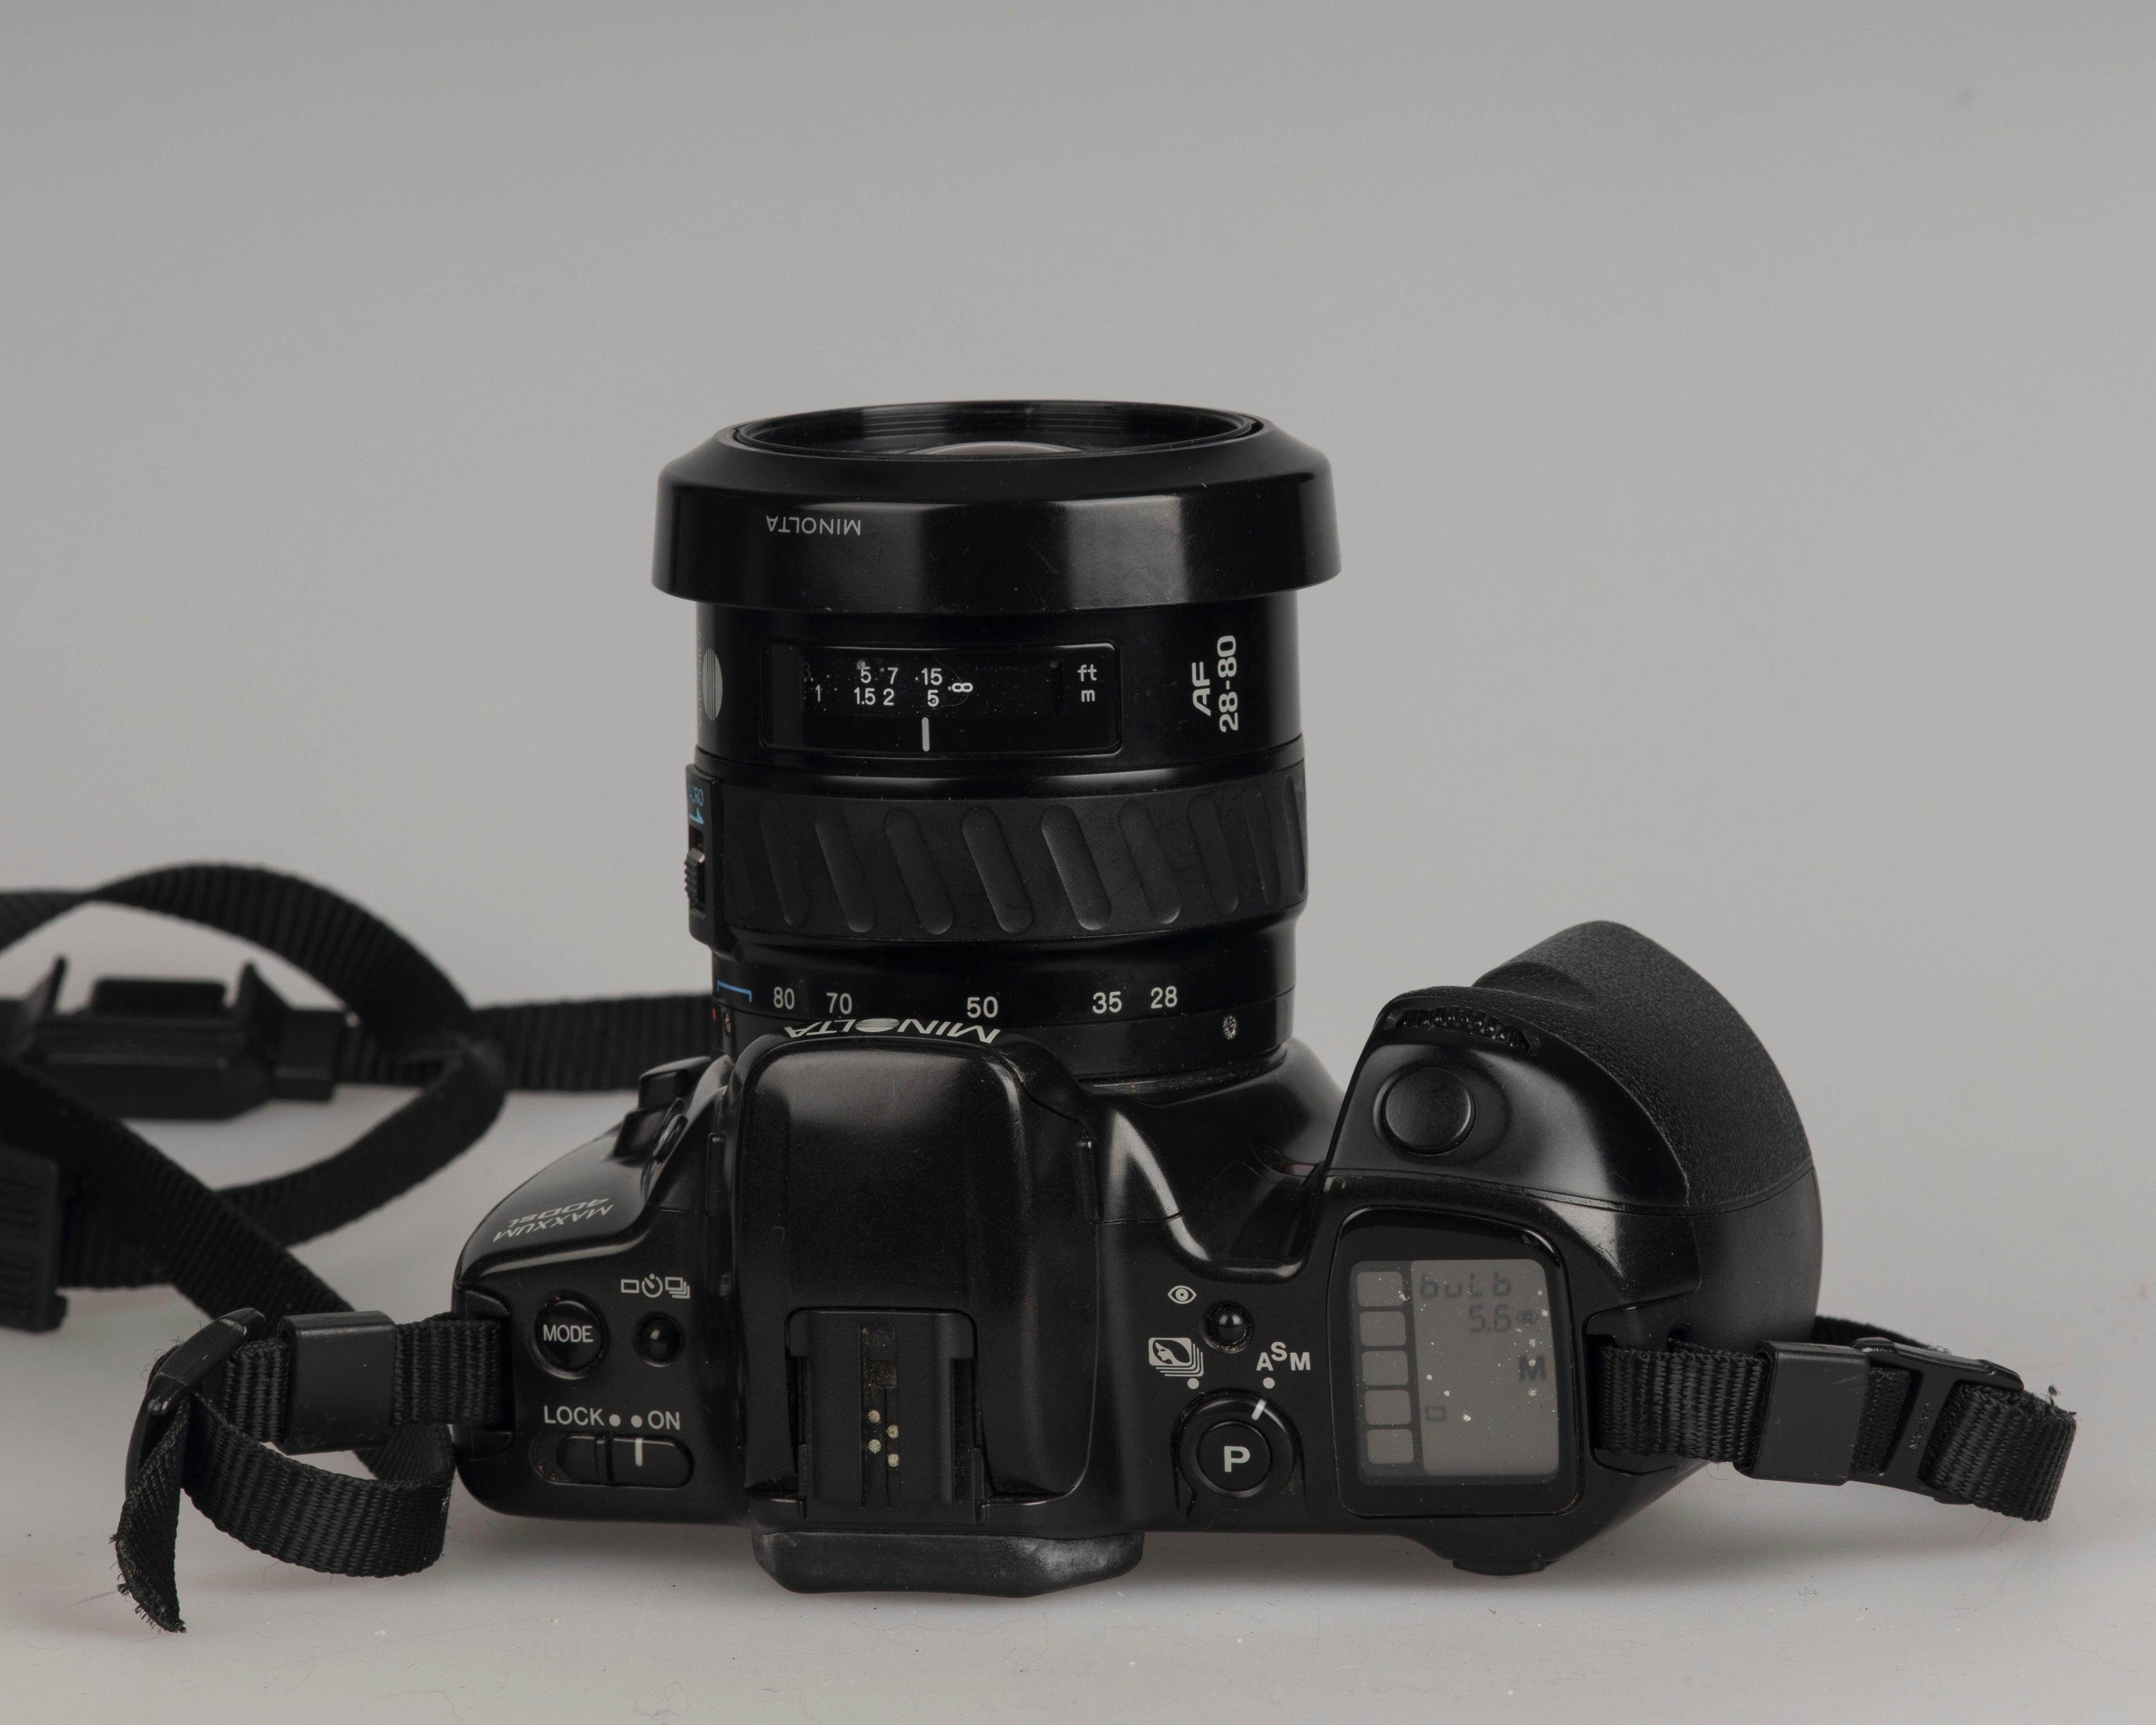 Minolta Maxxum 400si 35mm film SLR – New Wave Pool